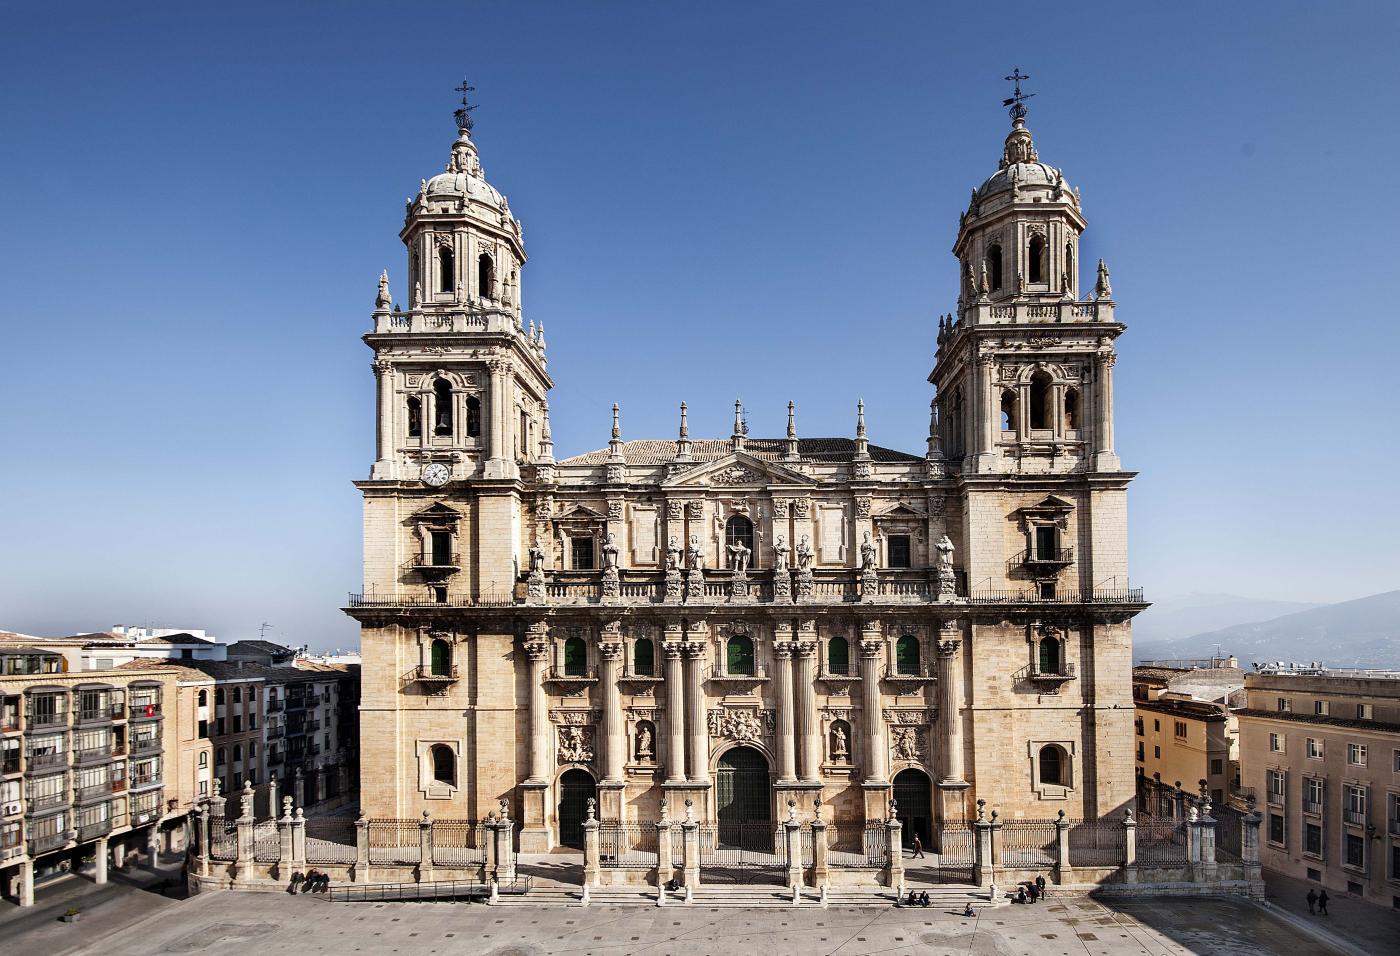 Free tour of monumental Jaén